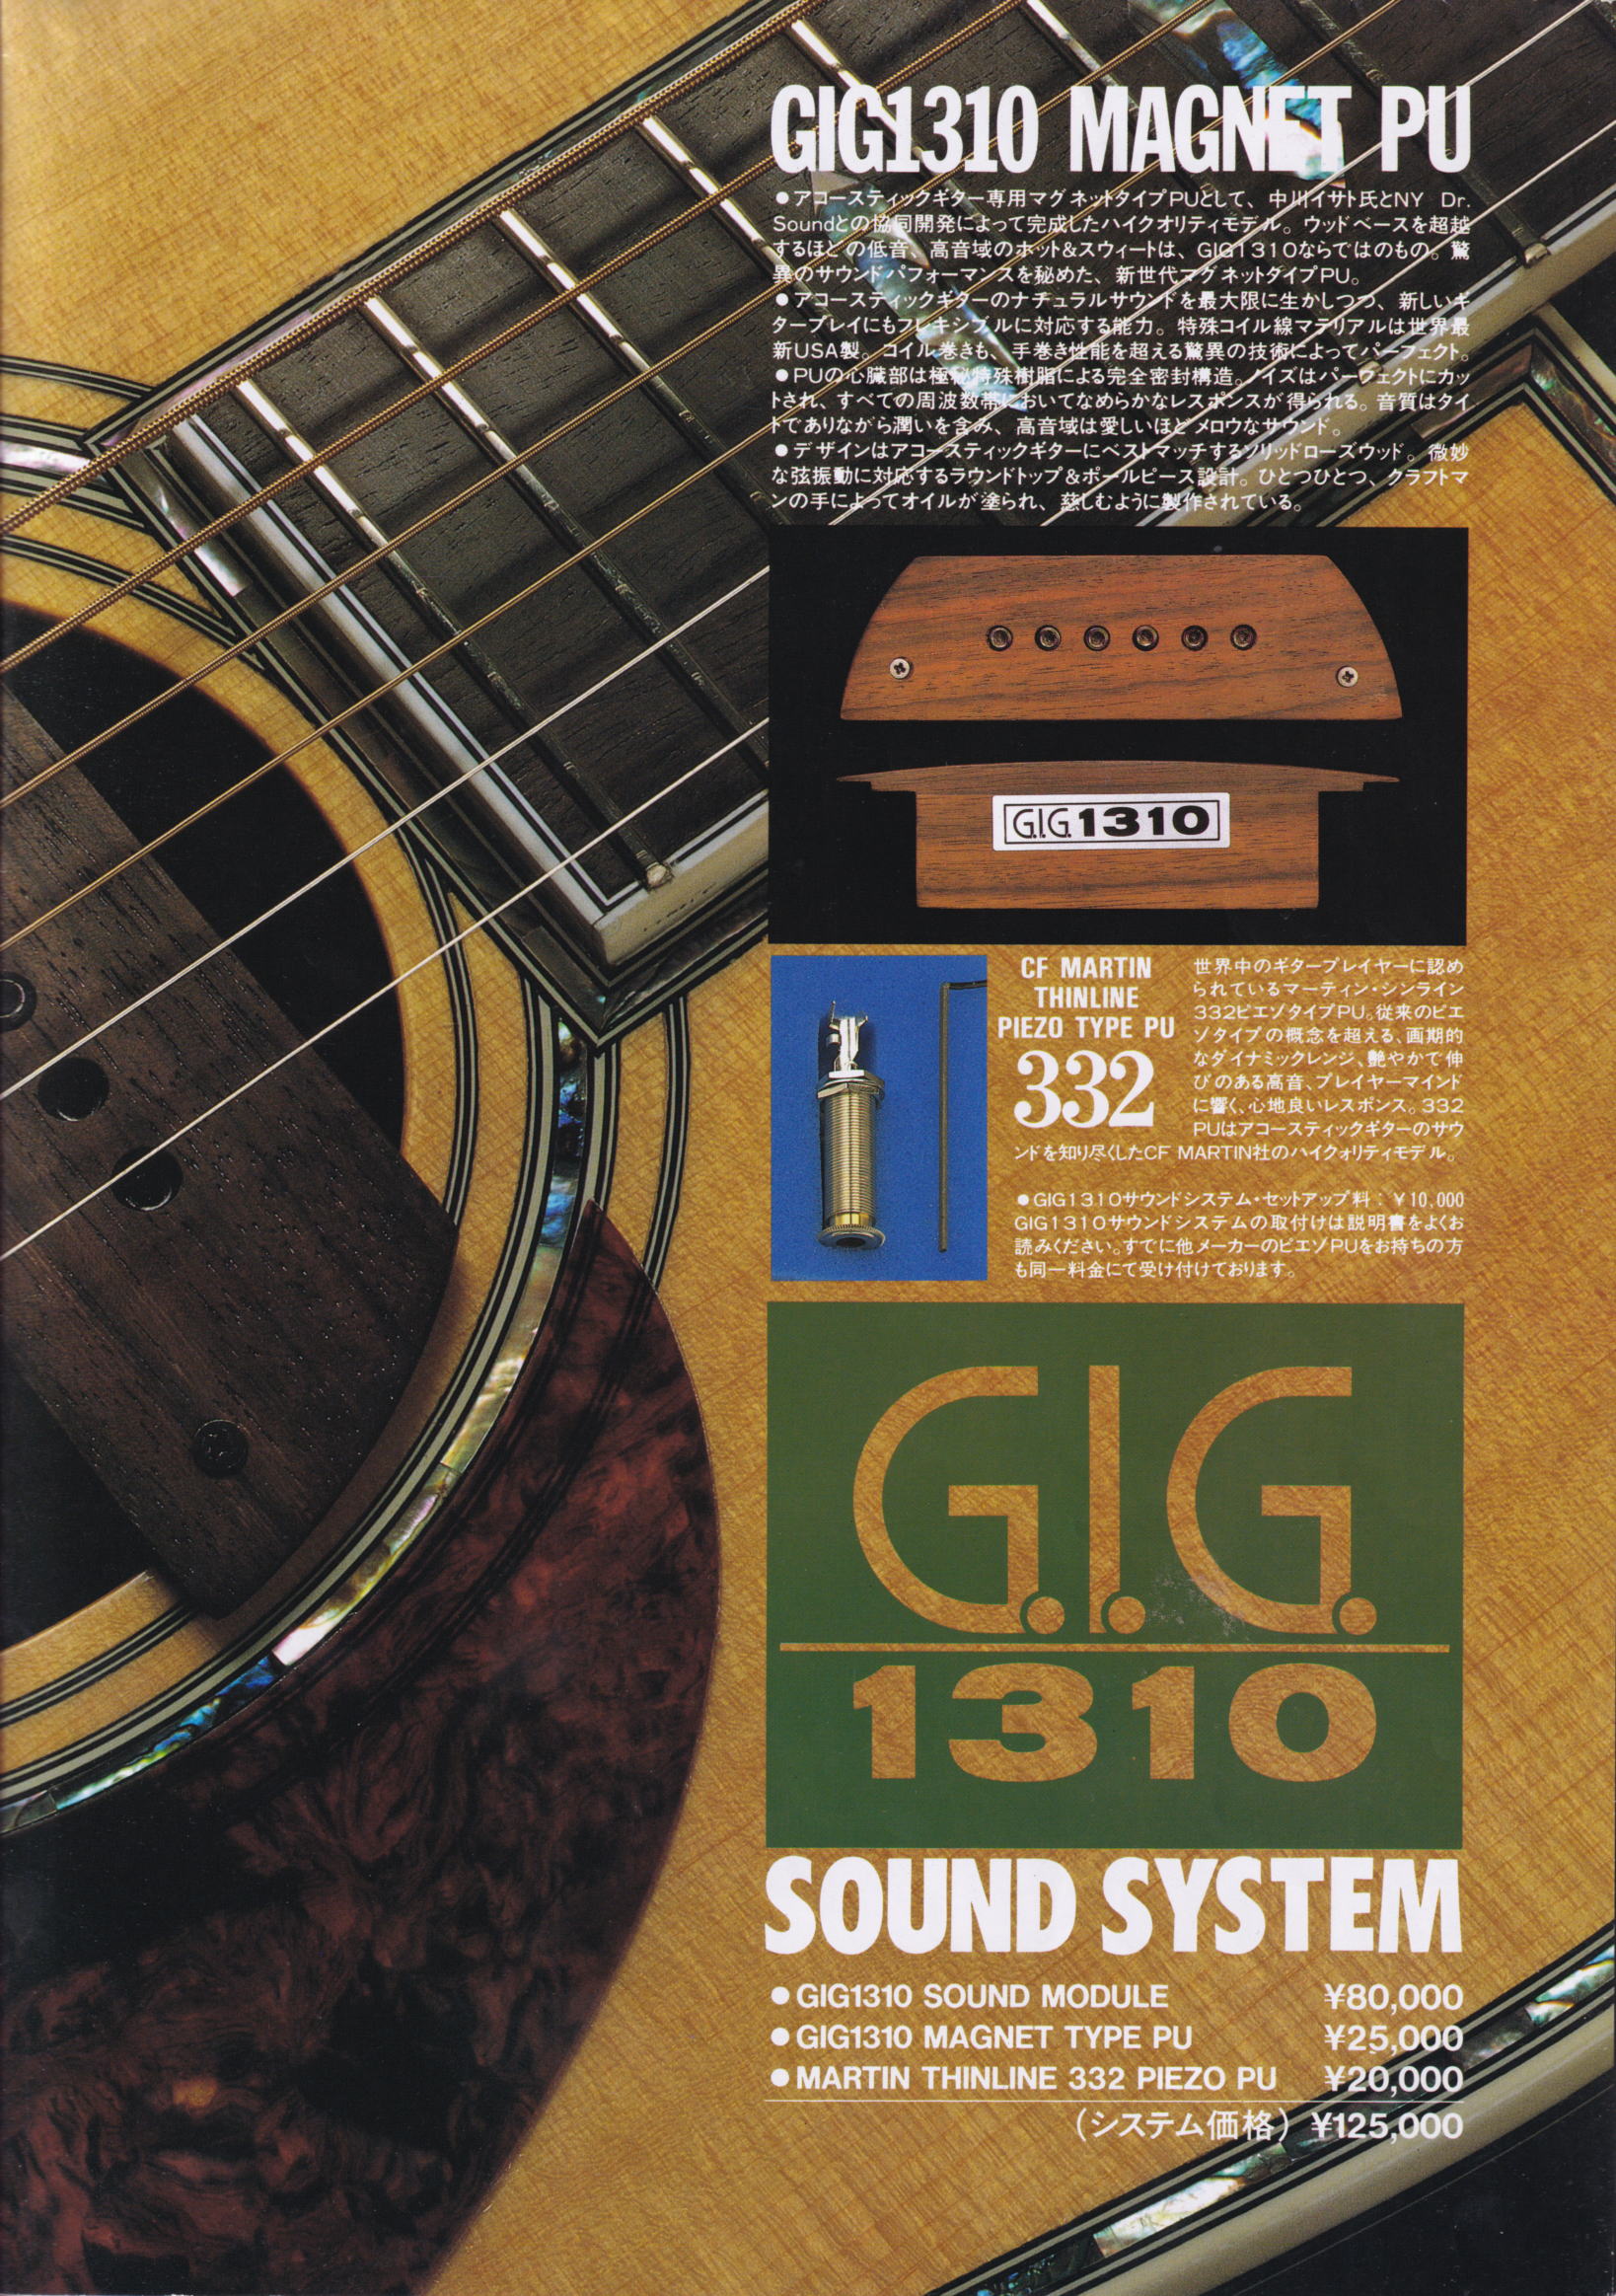 上品】 GIG1310 ギターピックアップ その他 - www.powertee.com